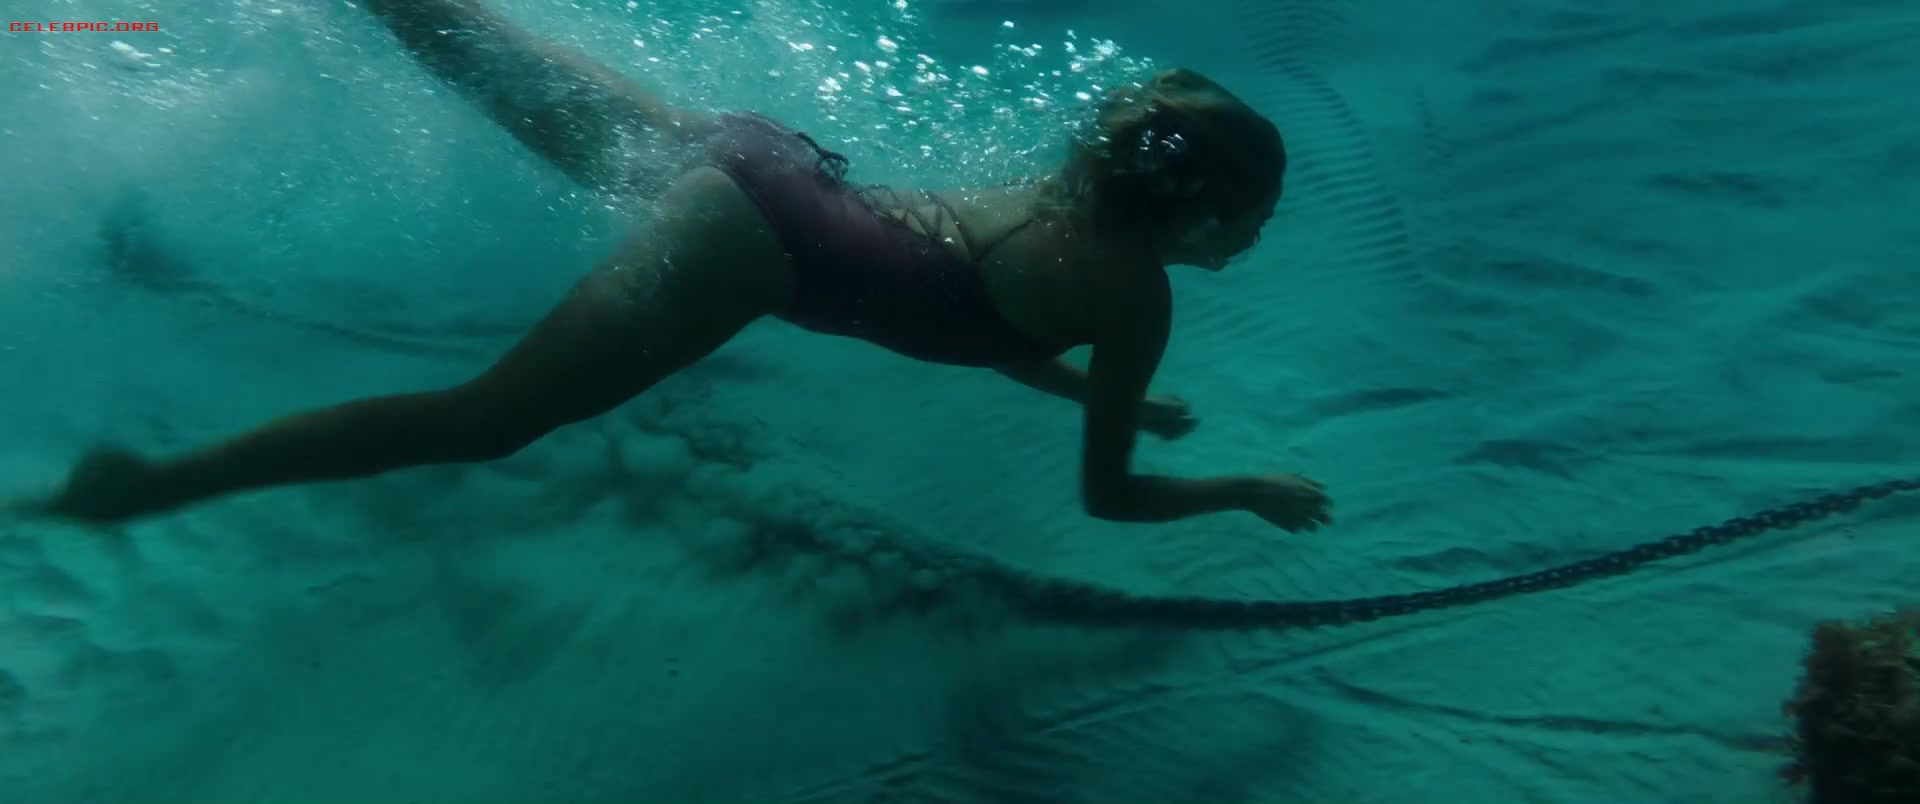 Shailene Woodley - Adrift 1080p (1) 1023.jpg